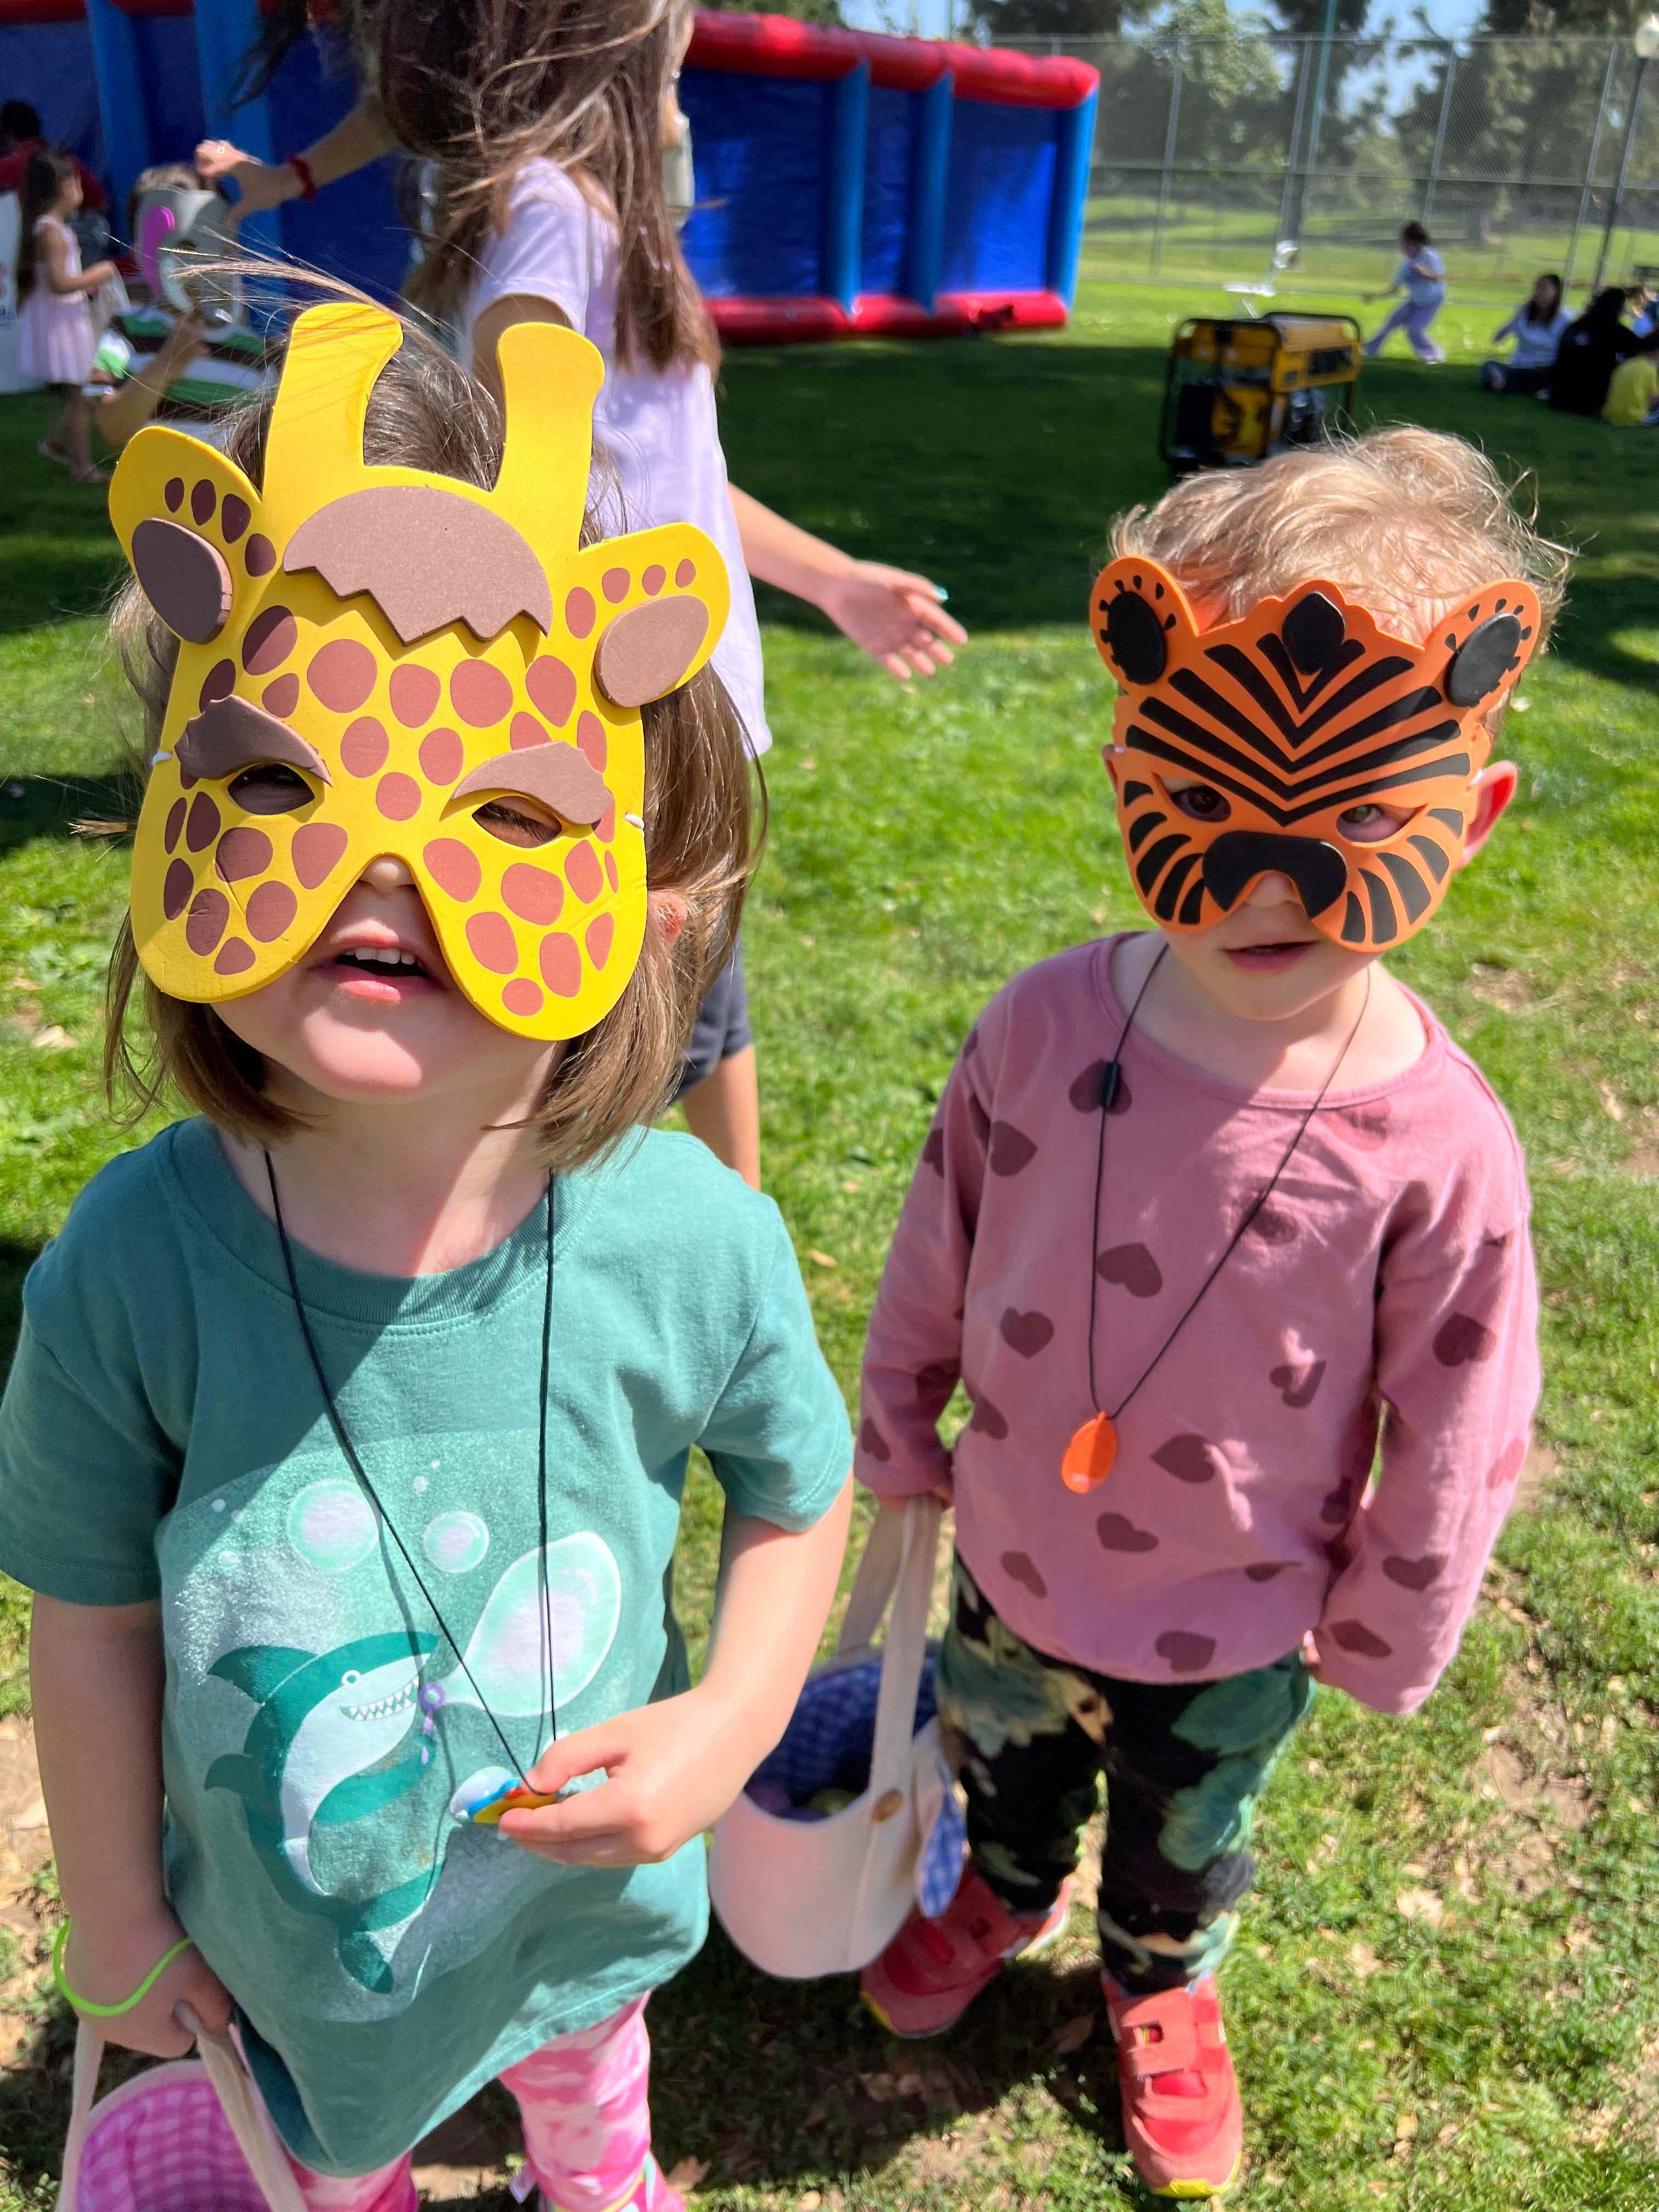 Die Zwillinge von Marah Eakin tragen eine Giraffenmaske und eine Tigermaske